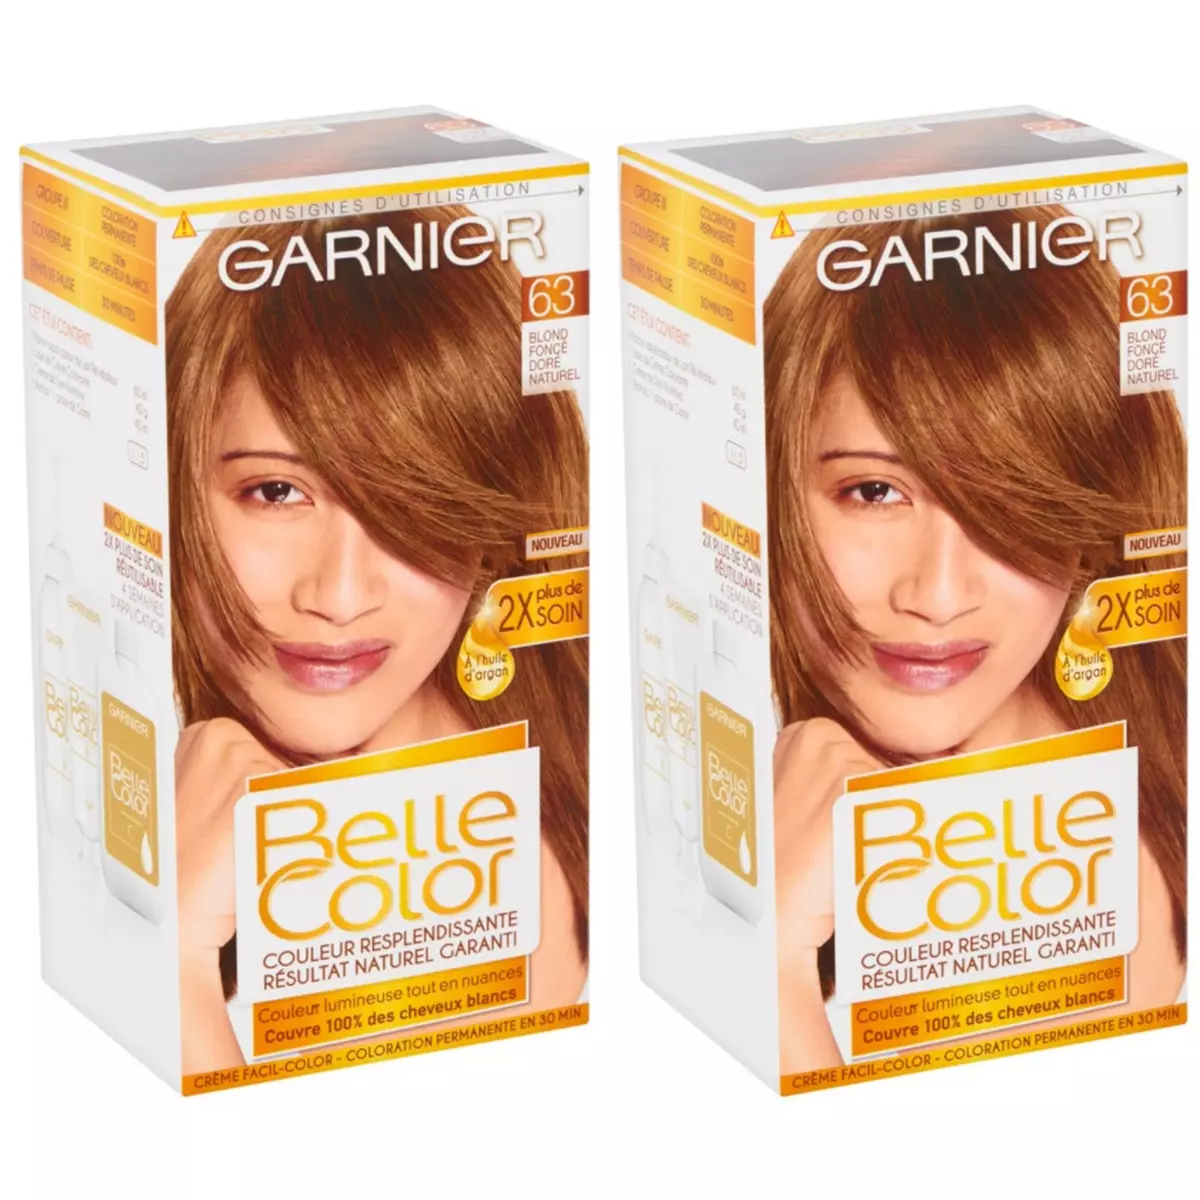 GARNIER Lot de 2 BELLE COLOR Coloration Permanente Résultat Naturel - Couleur Resplendissante 63 Blond Foncé Doré